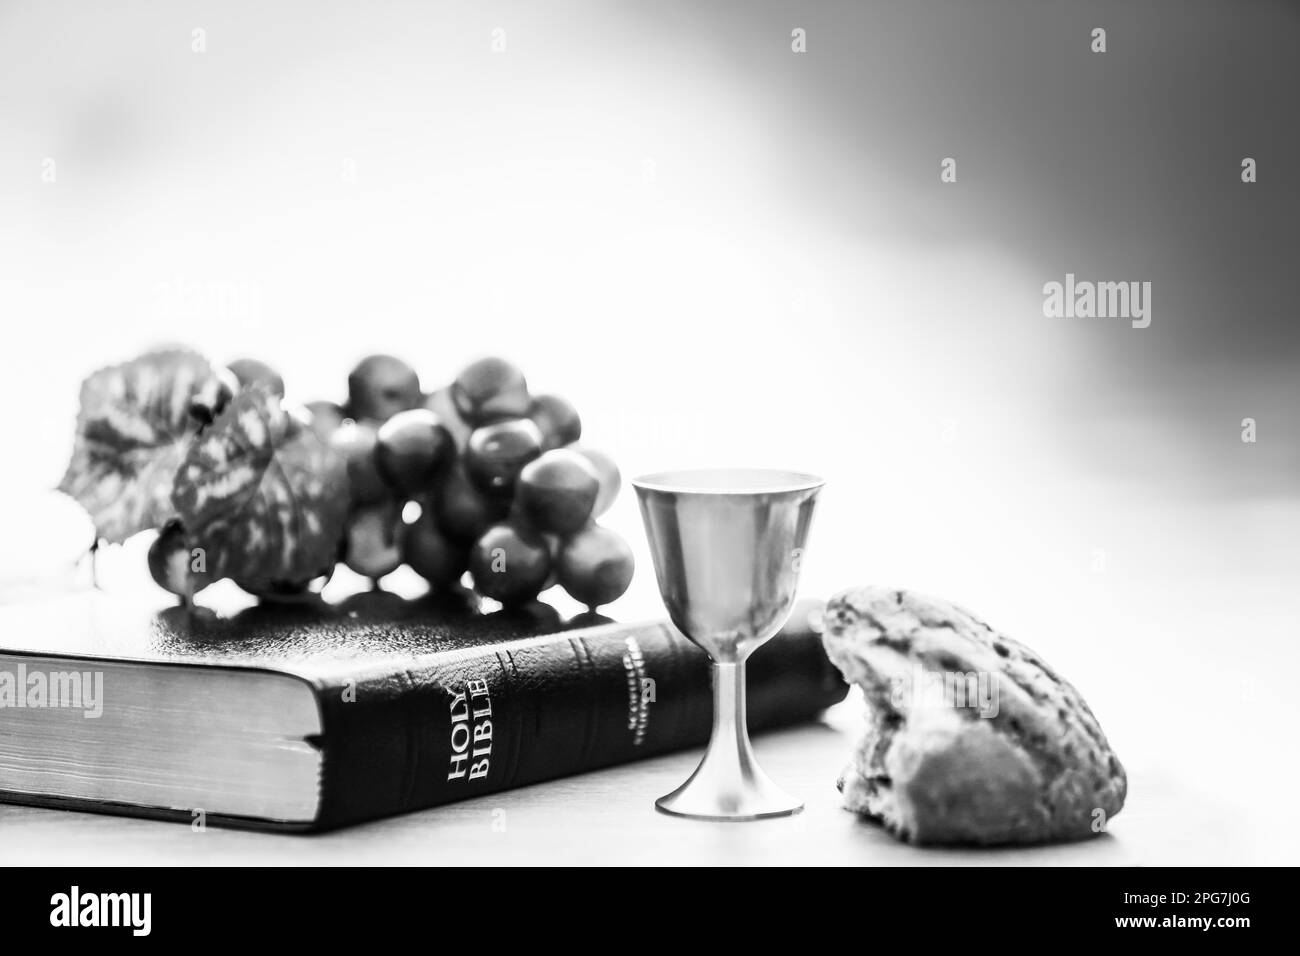 Heilige Kommunion, symbolisiert das Blut und Fleisch Jesu Christi, das letzte Abendmahl, Brot, Wein, Trauben, Bibel, Leihgabe, Passionswoche, Ostern Stockfoto